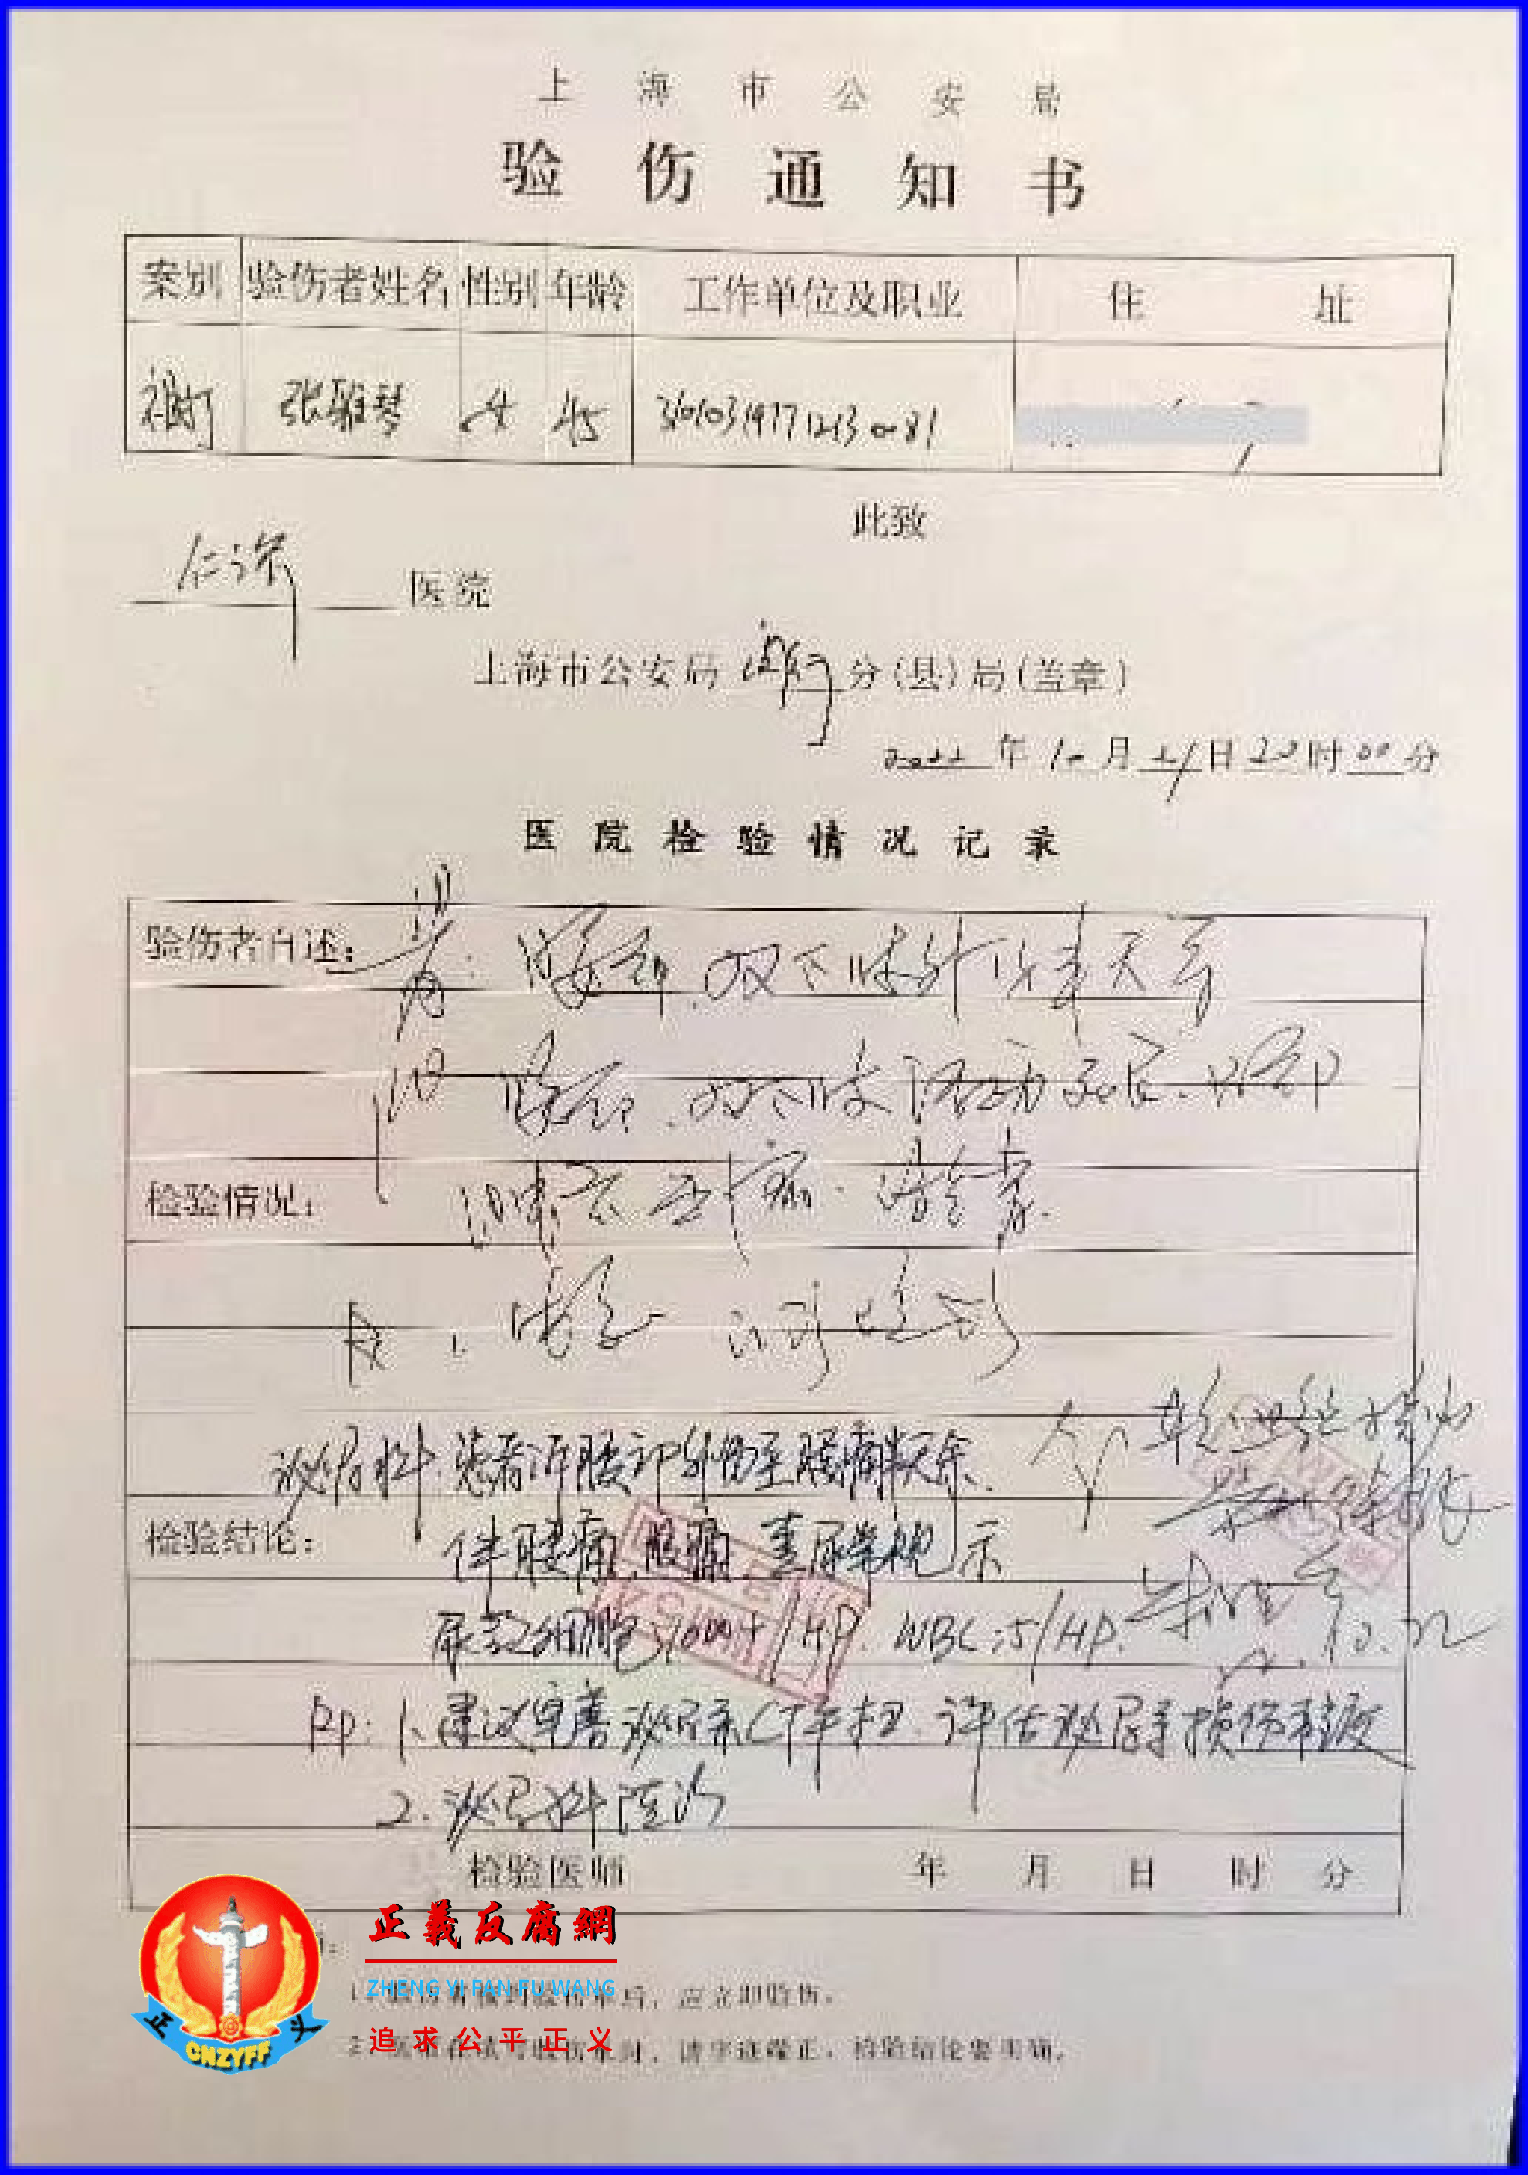 2022年10月21日上海市民张雅琴因为套路贷纠纷遭人暴打后验伤。.png